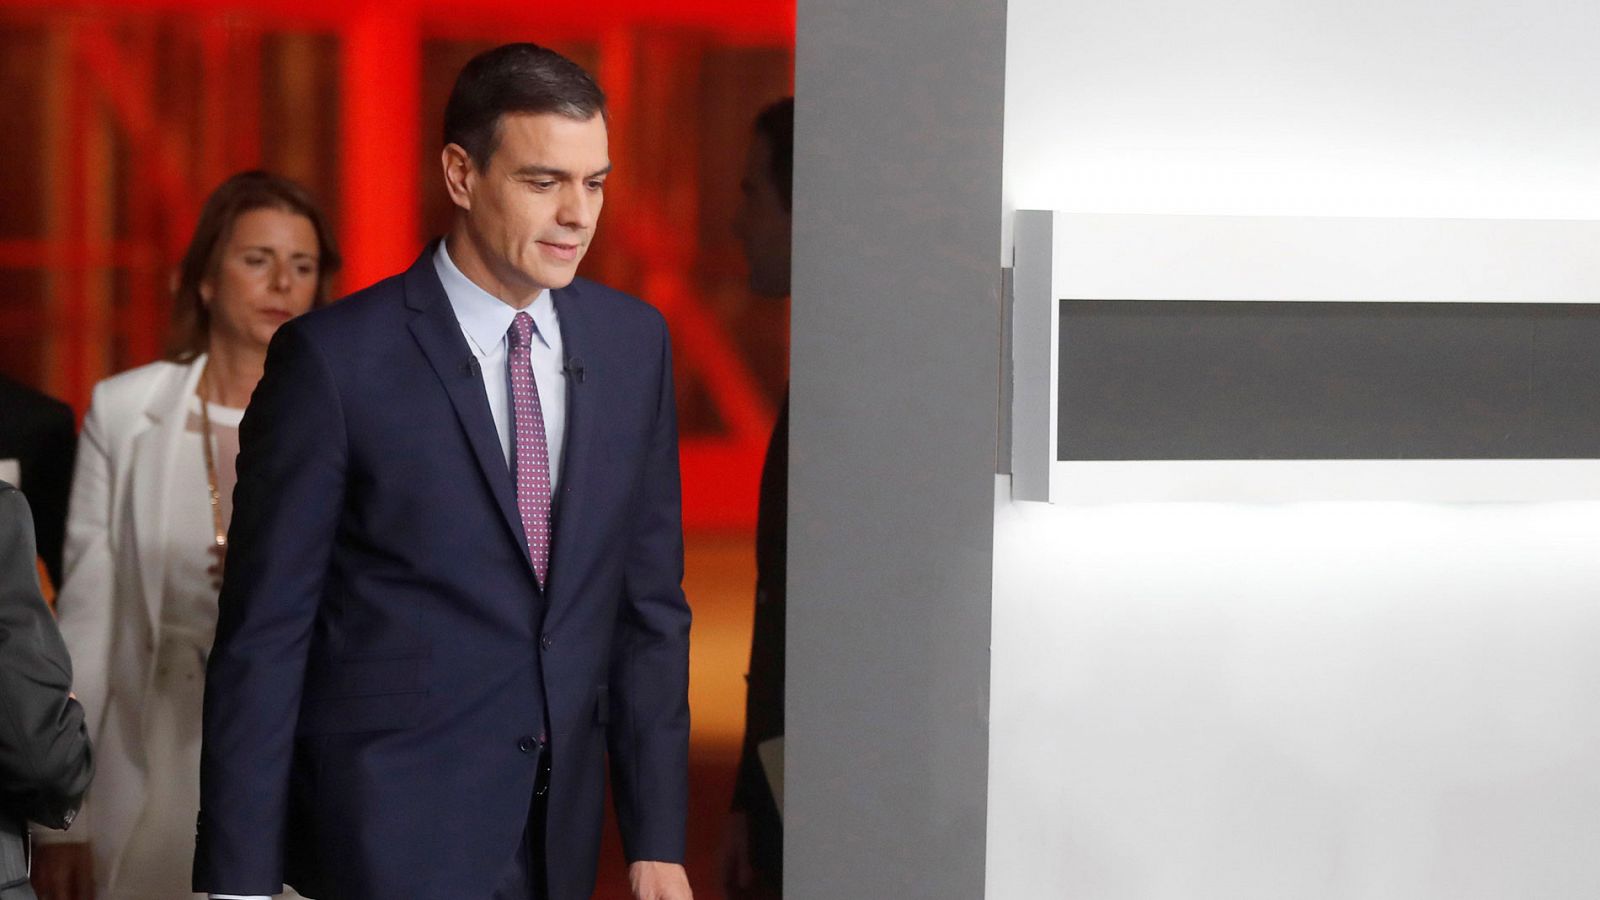 Elecciones Generales 2019 del 10N: Sánchez dice cómo traerá a Puigdemont ante la justicia española: ¿La fiscalía depende del Gobierno?... "pues ya está" - RTVE.es